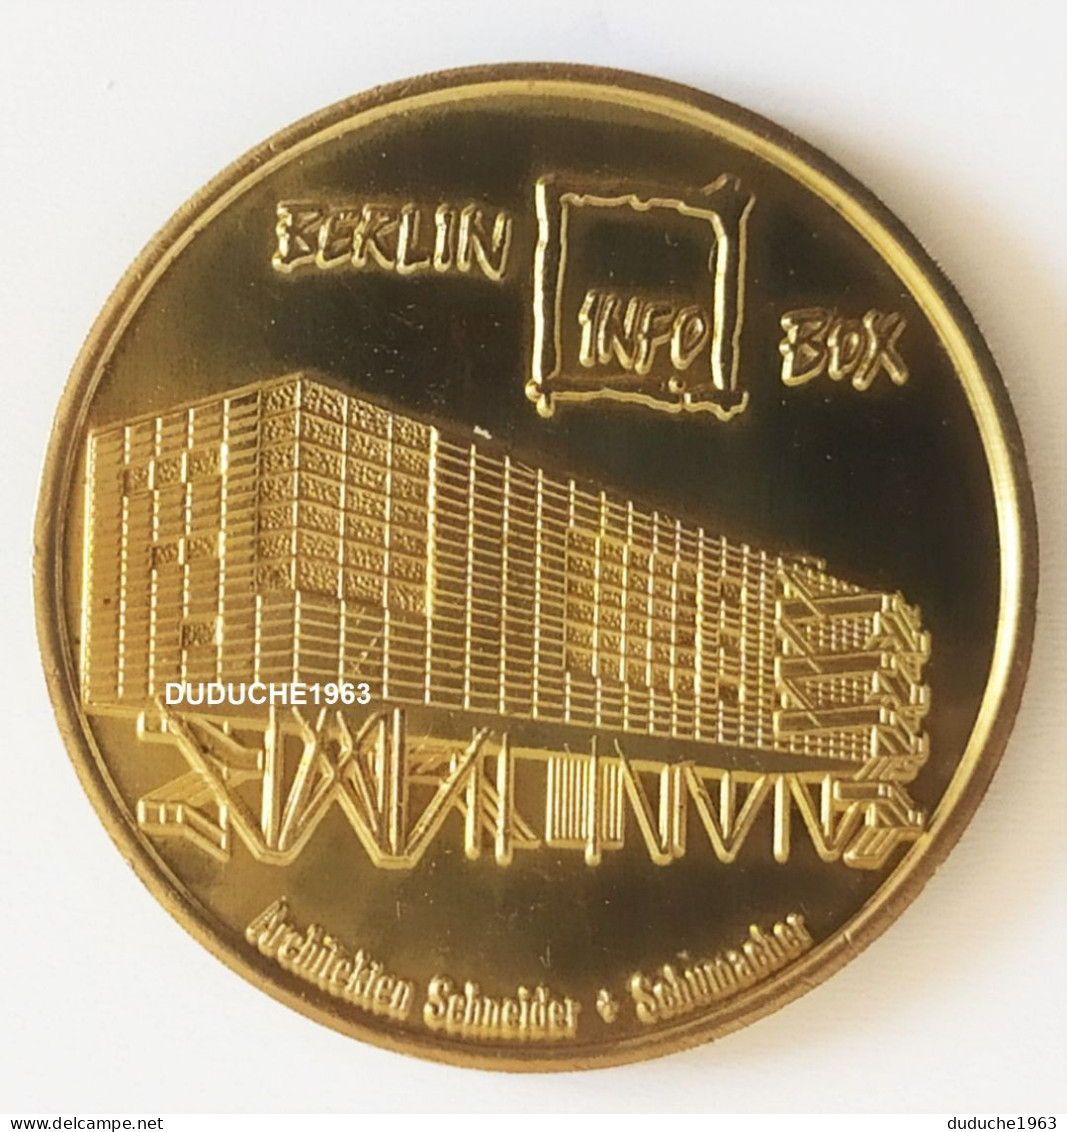 Monnaie De Paris. Allemagne - Berlin - Globe Taler Infobox Fernsehturm 1997/1998 - Ohne Datum